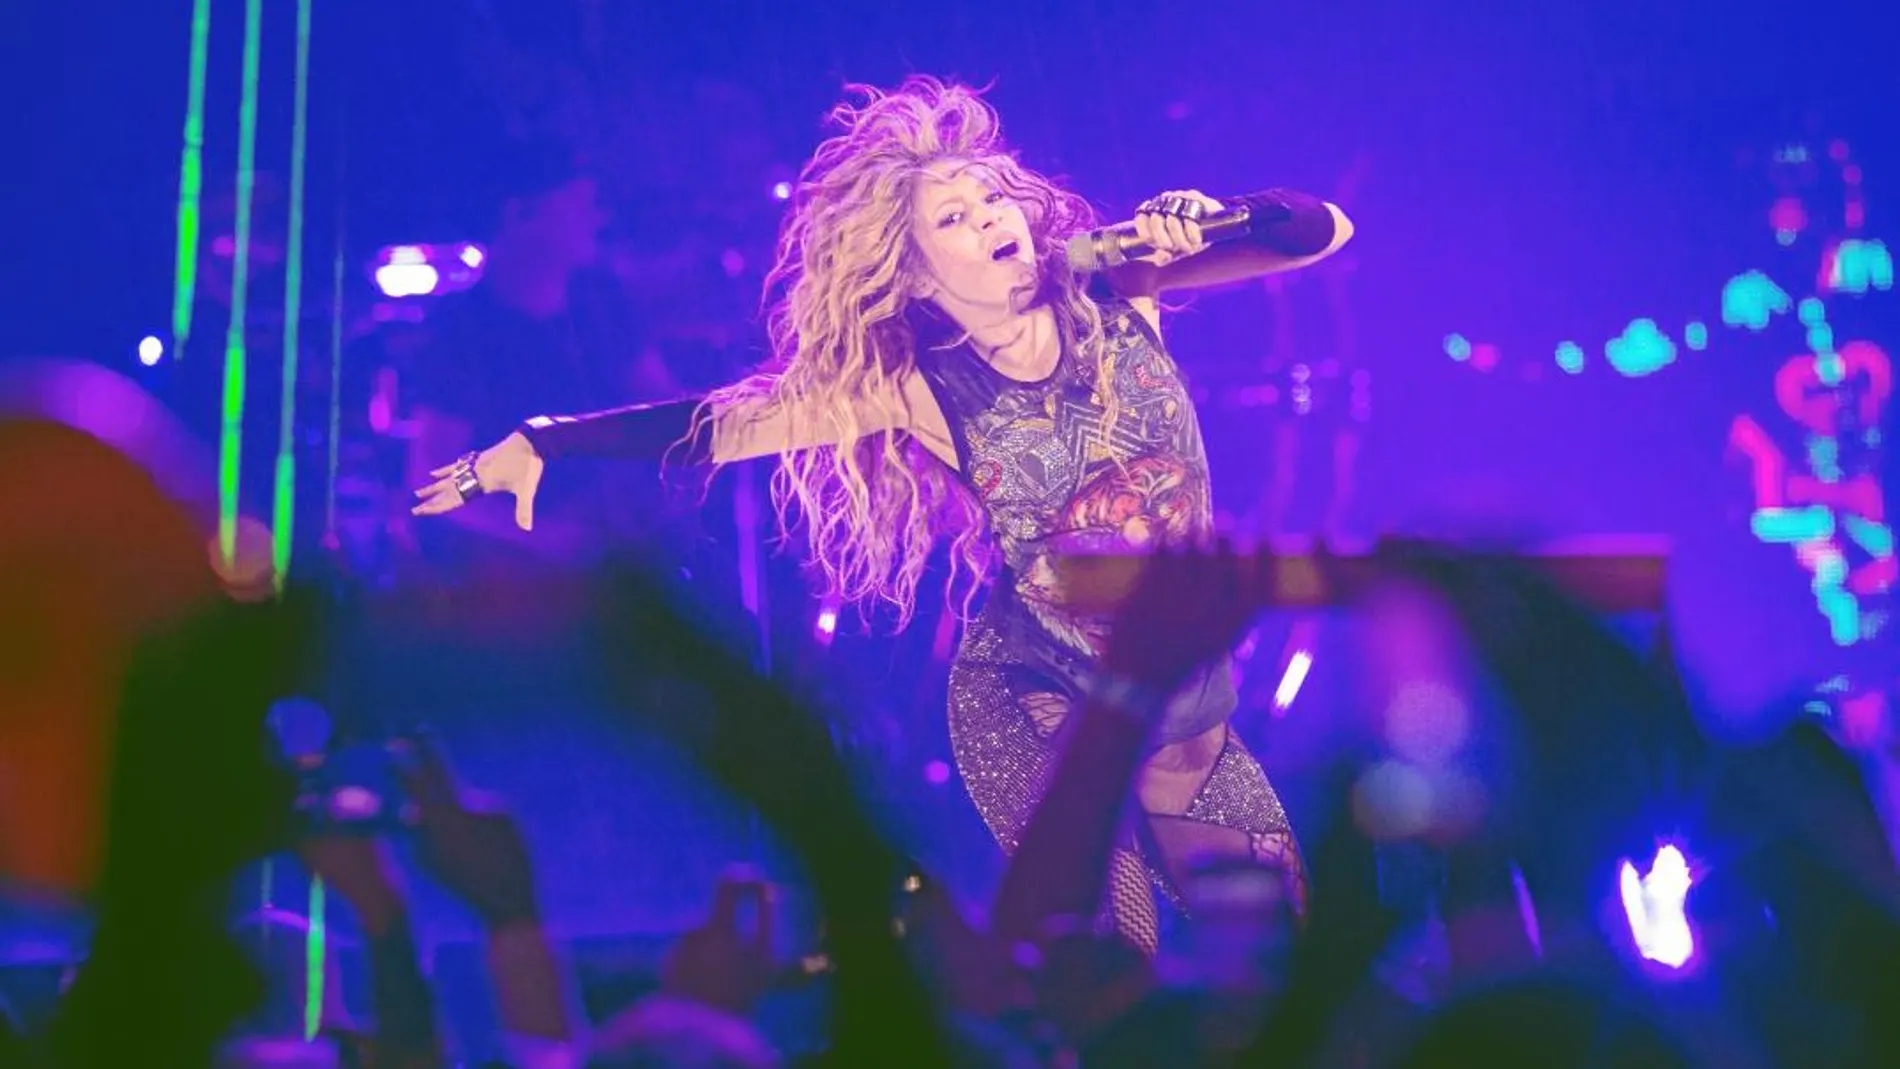 La colombiana Shakira, anoche en su concierto de Madrid / Foto: Rubén Mondelo